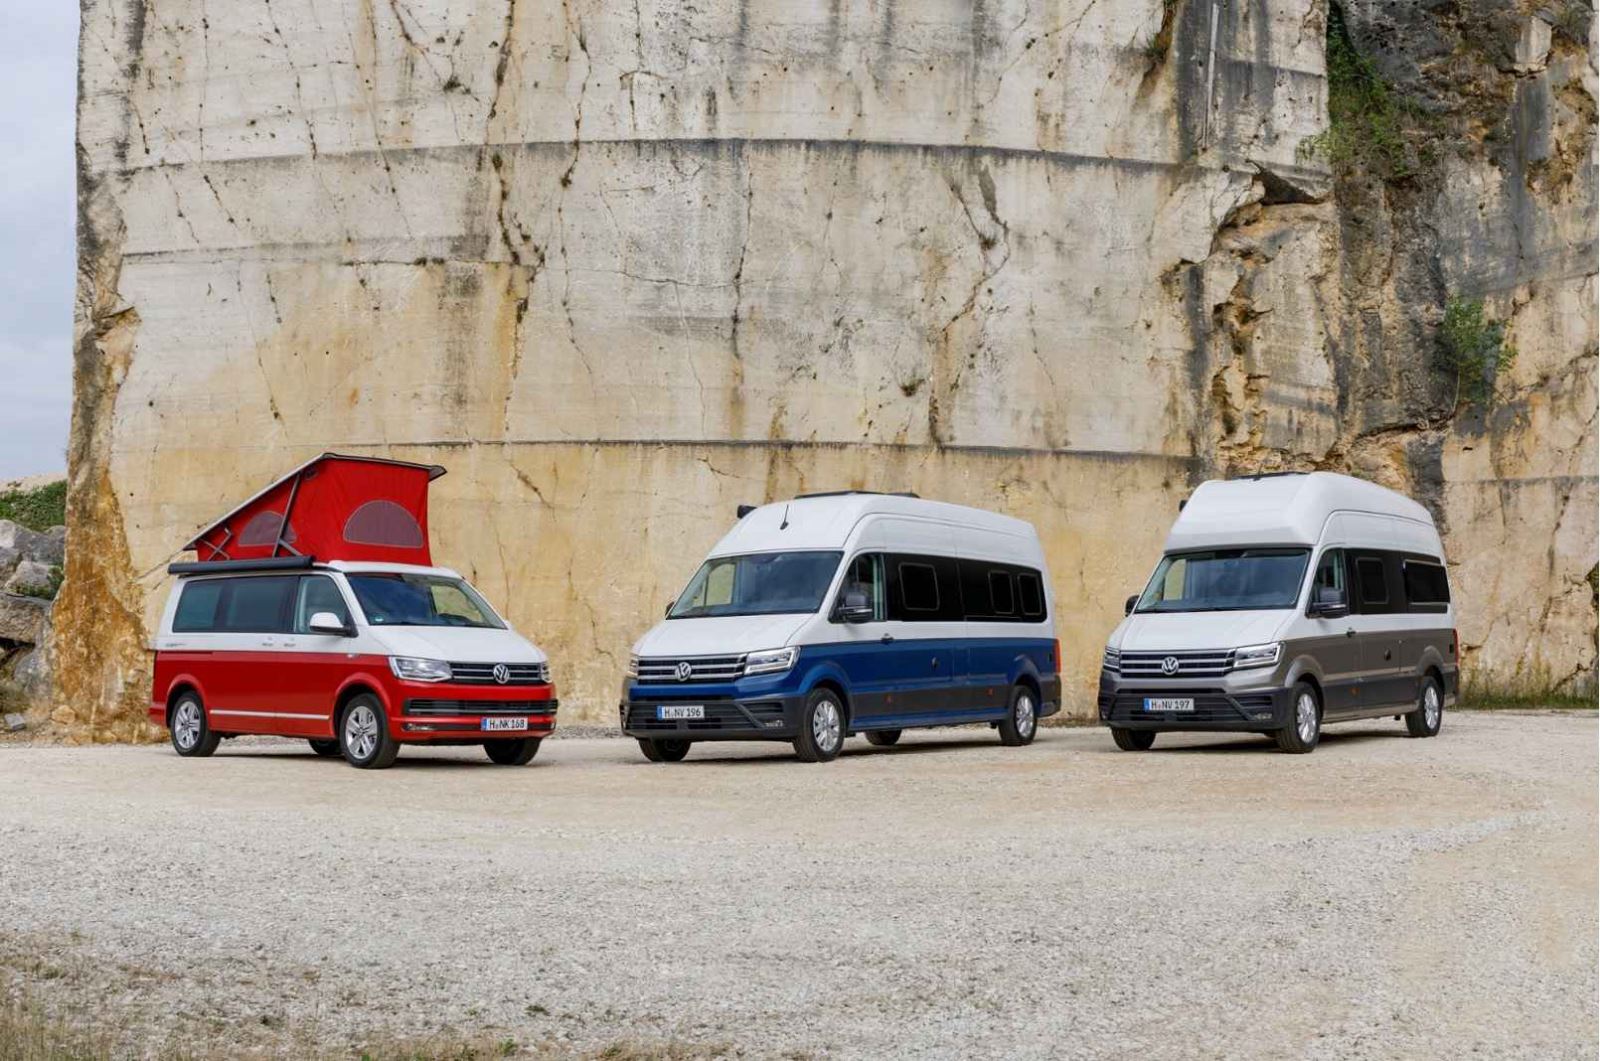 Modern VW campervans